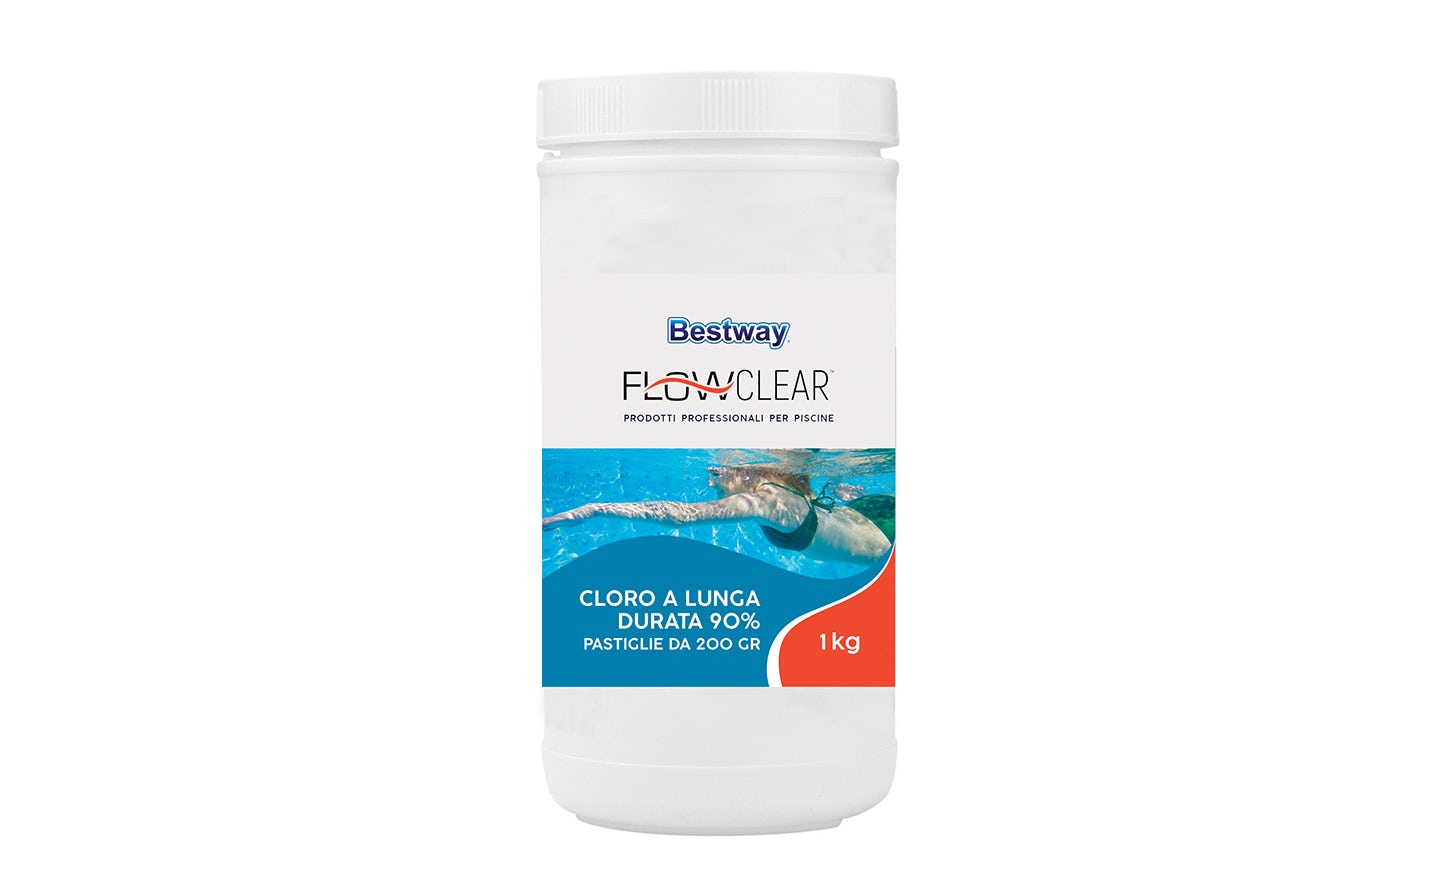 Trattamento chimico dell'acqua Cloro a lunga durata 90%, pastiglie da 200 g Bestway 1